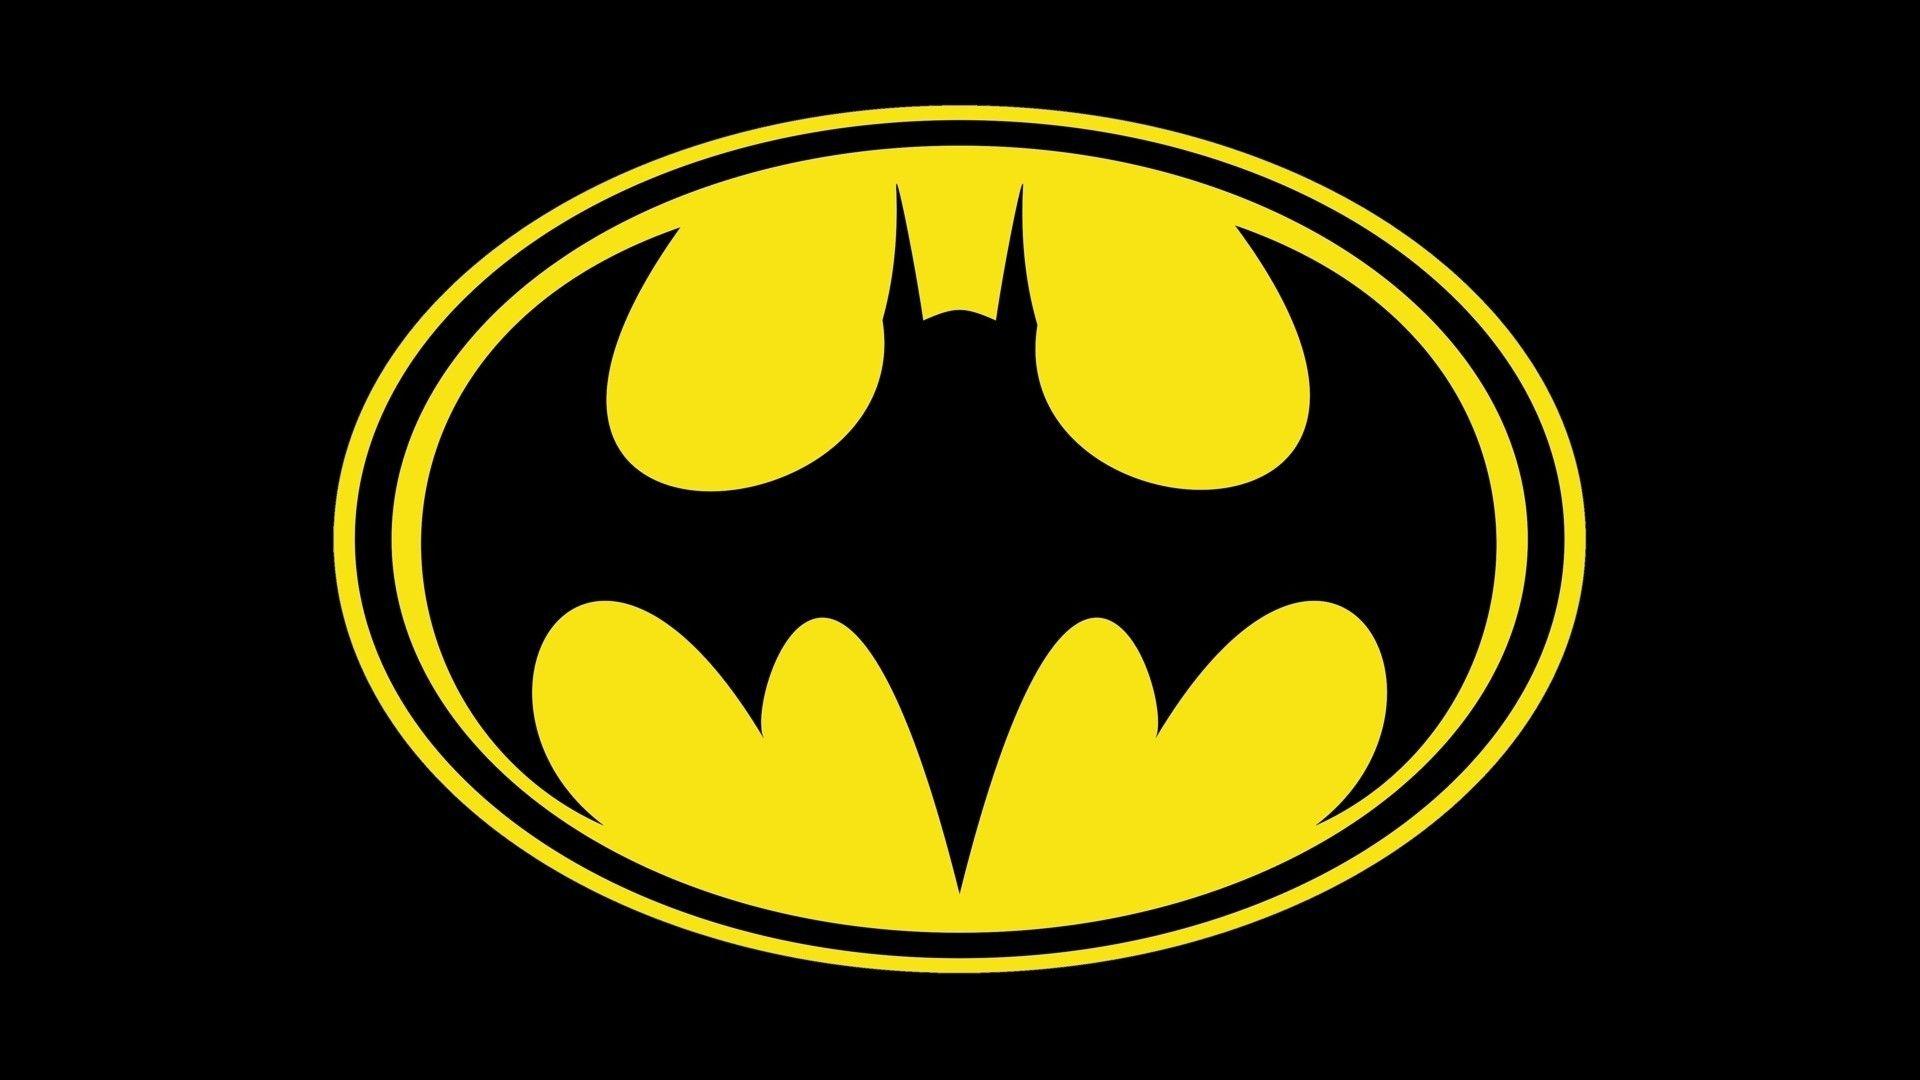 Wallpaper, 1920x1080 px, Batman logo, black 1920x1080